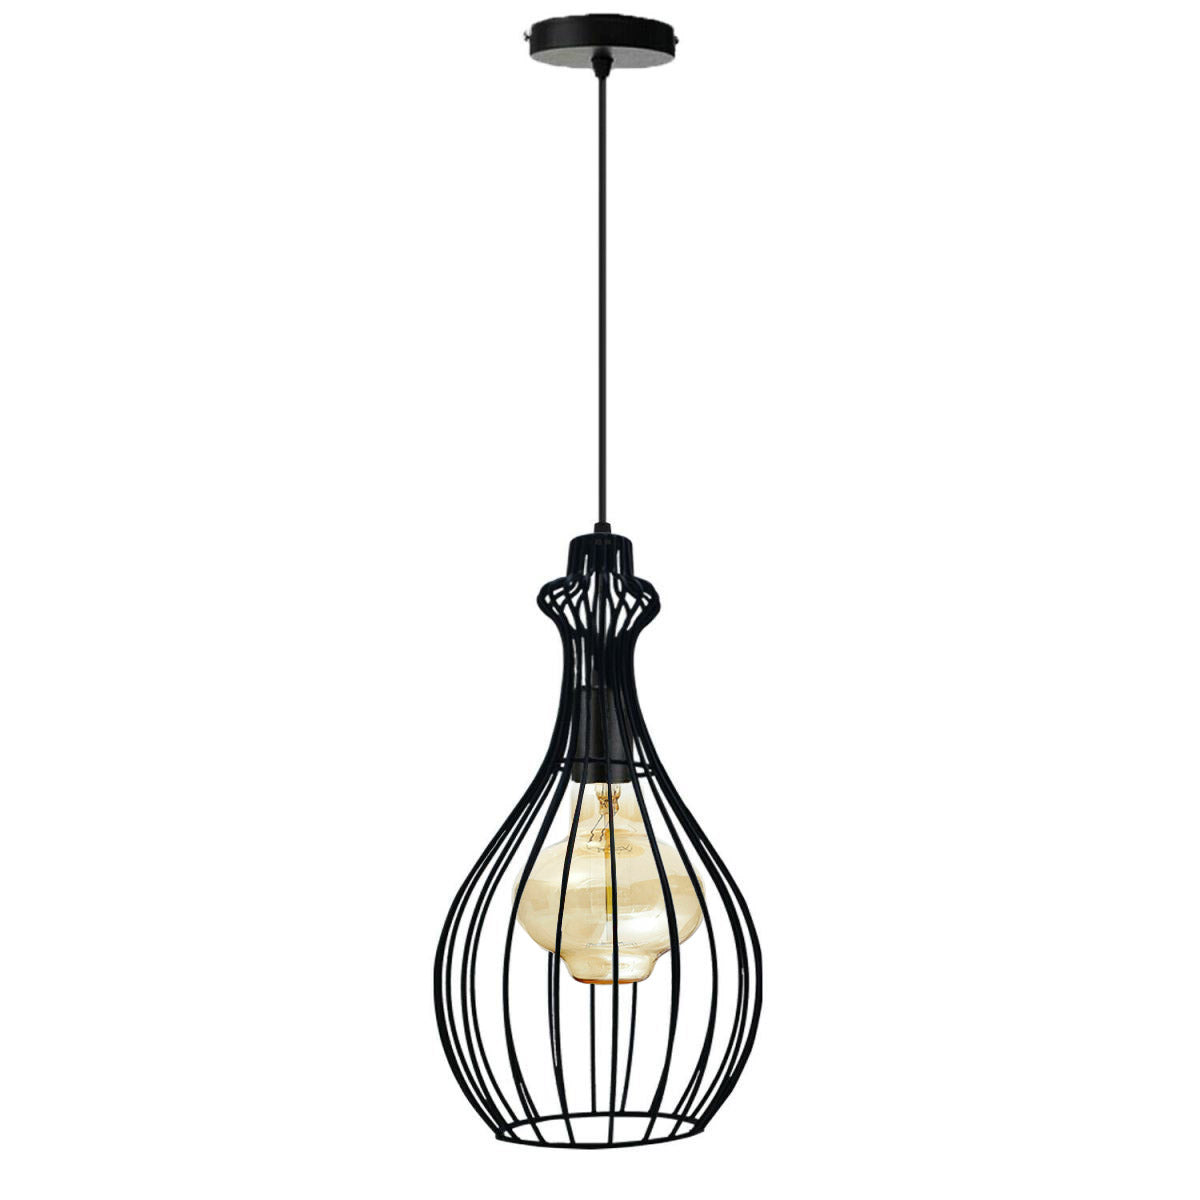 Ceiling Pendant Light Industrial Retro Vintage Black Colour Lamp Cage~1300